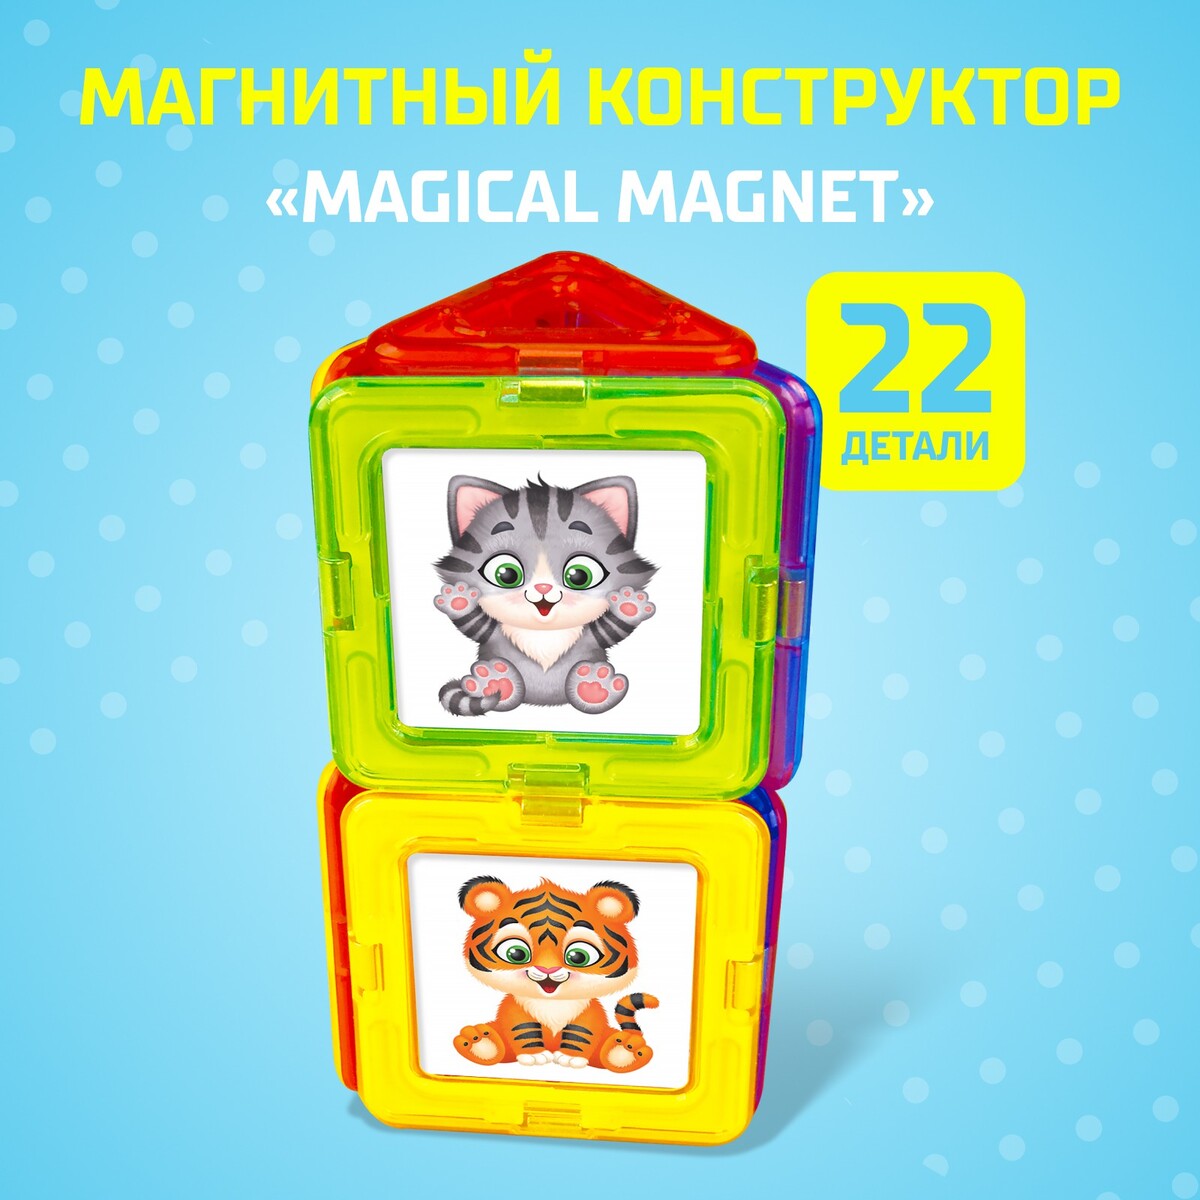 Магнитный конструктор magical magnet, 22 детали, детали матовые конструктор теропром мини качели 33 детали 1552111